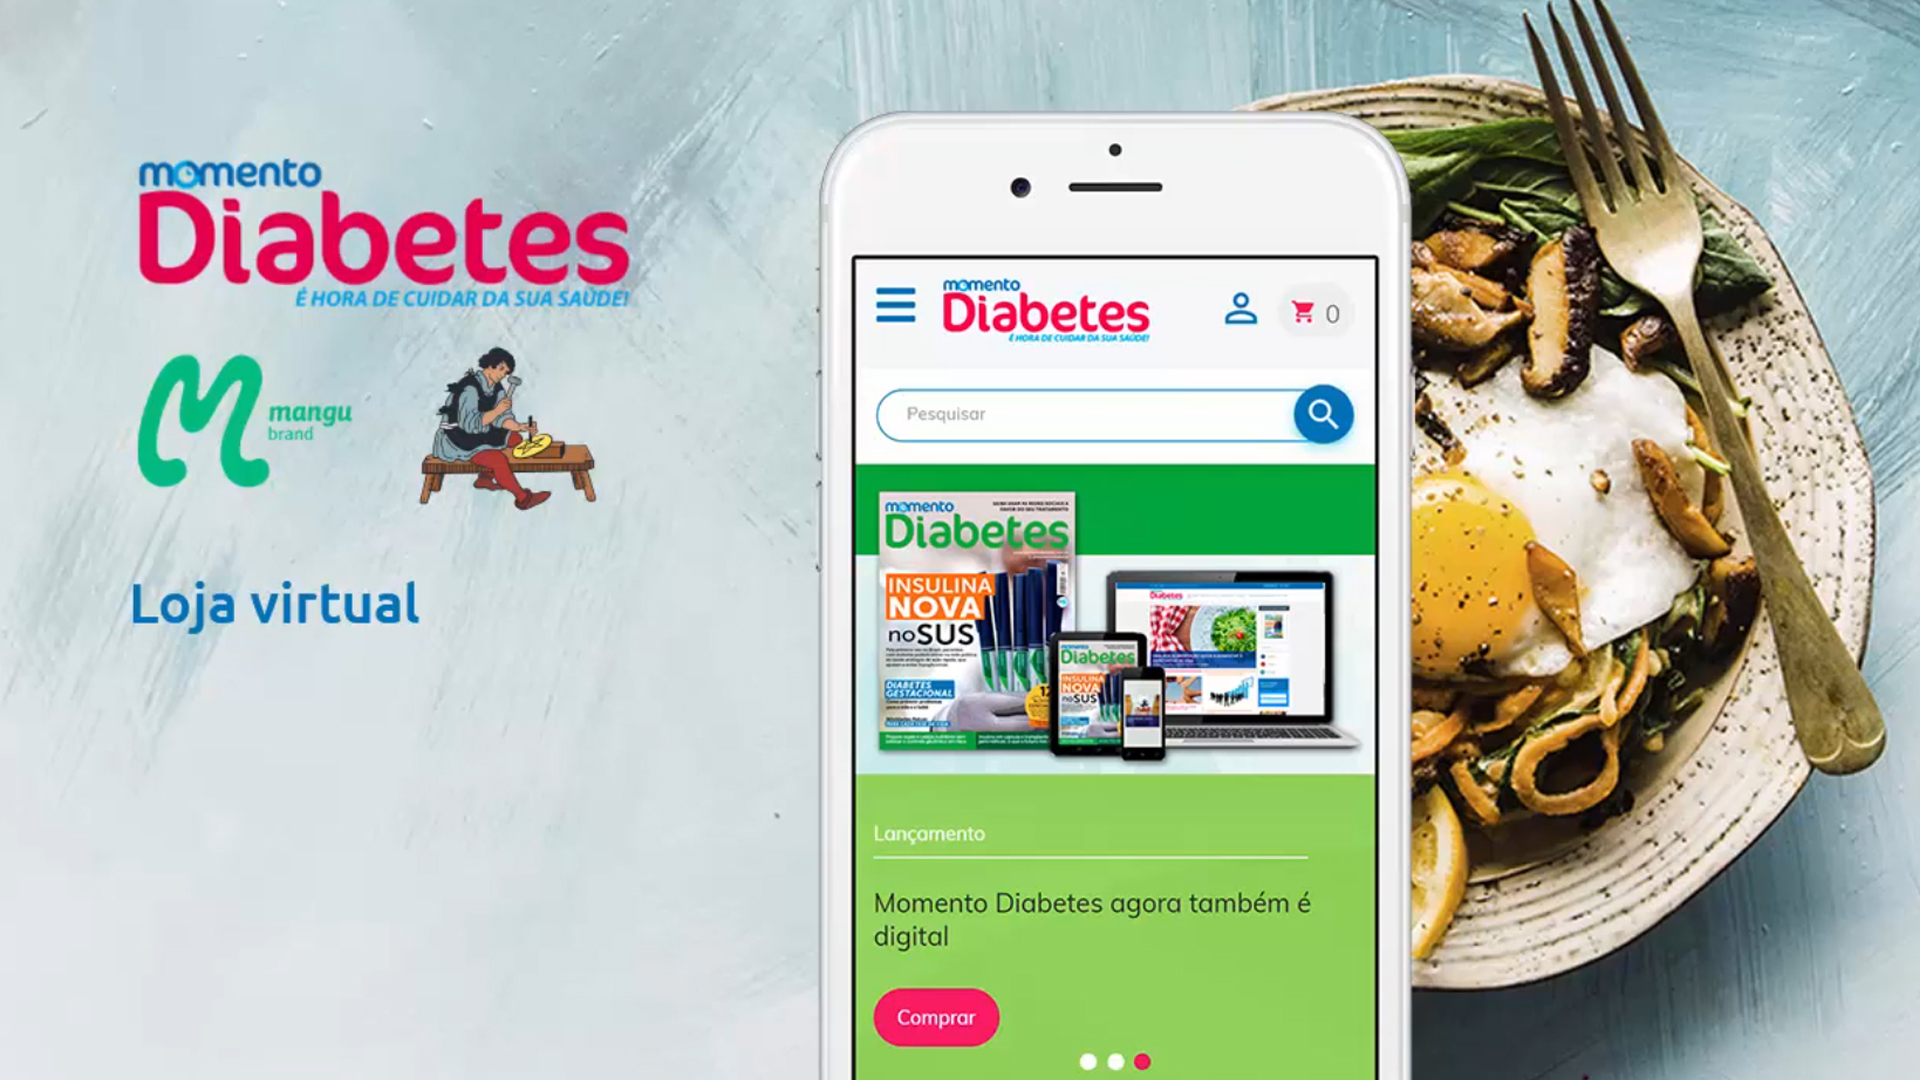 Momento Diabetes – Fórum dos assinantes e área especialistas